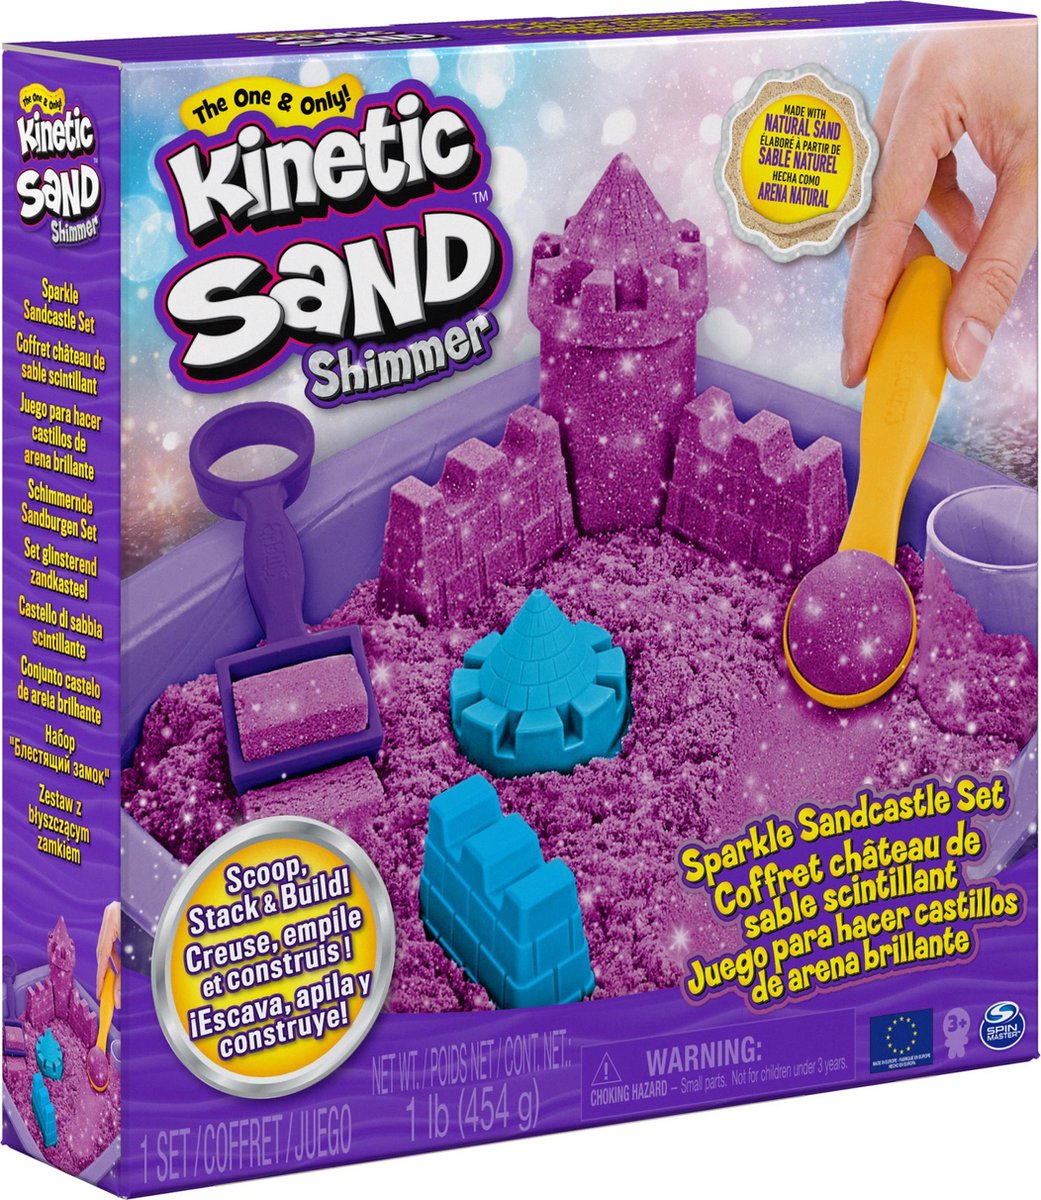 Kinetic sand - sable magique - coffret delices glaces parfume 454g